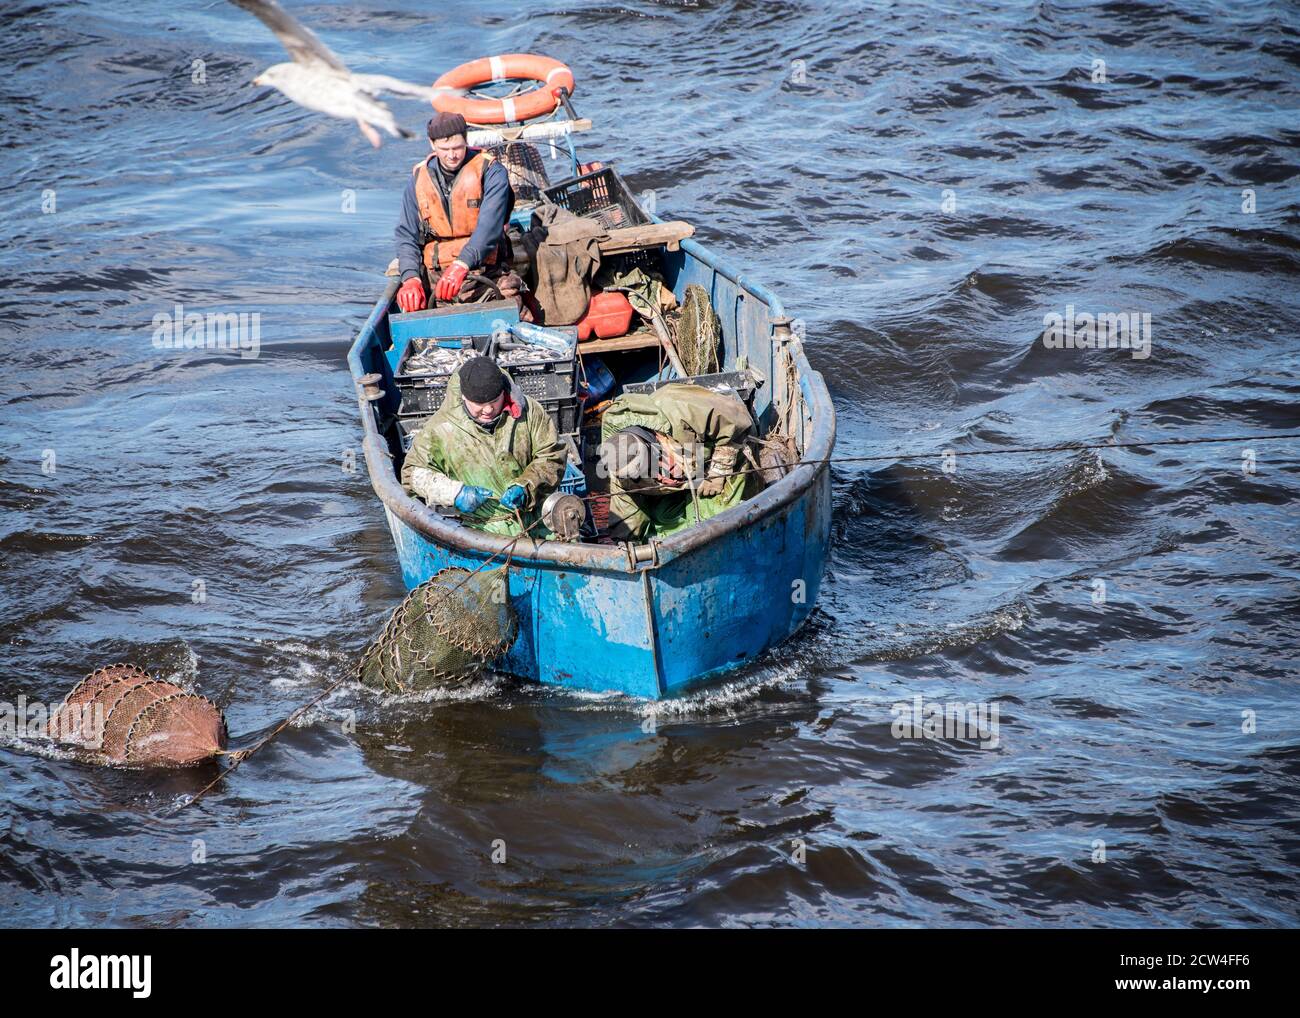 SAN PIETROBURGO, RUSSIA - 1 MAGGIO 2017: Pescatori professionisti pescano sul fiume Neva a San Pietroburgo Foto Stock